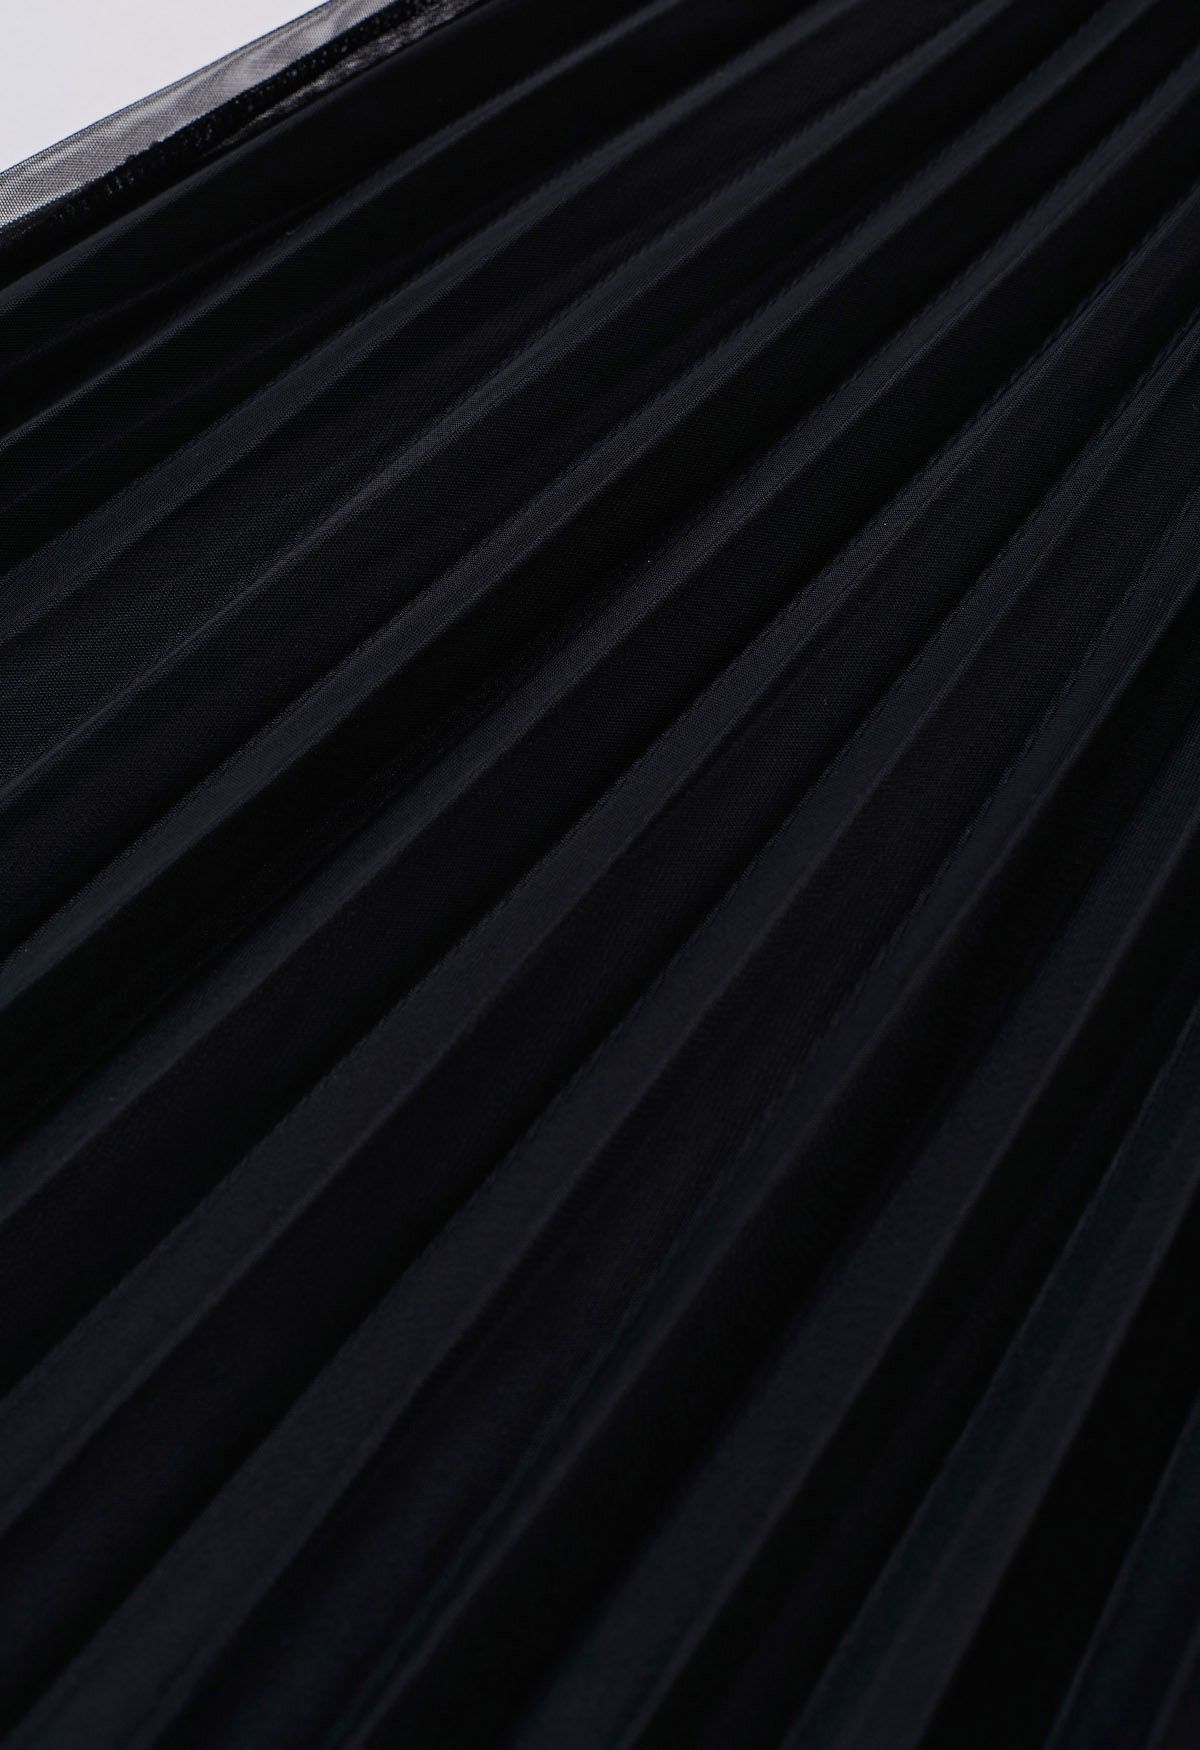 Falda de tul de malla plisada con dobladillo con paneles en negro